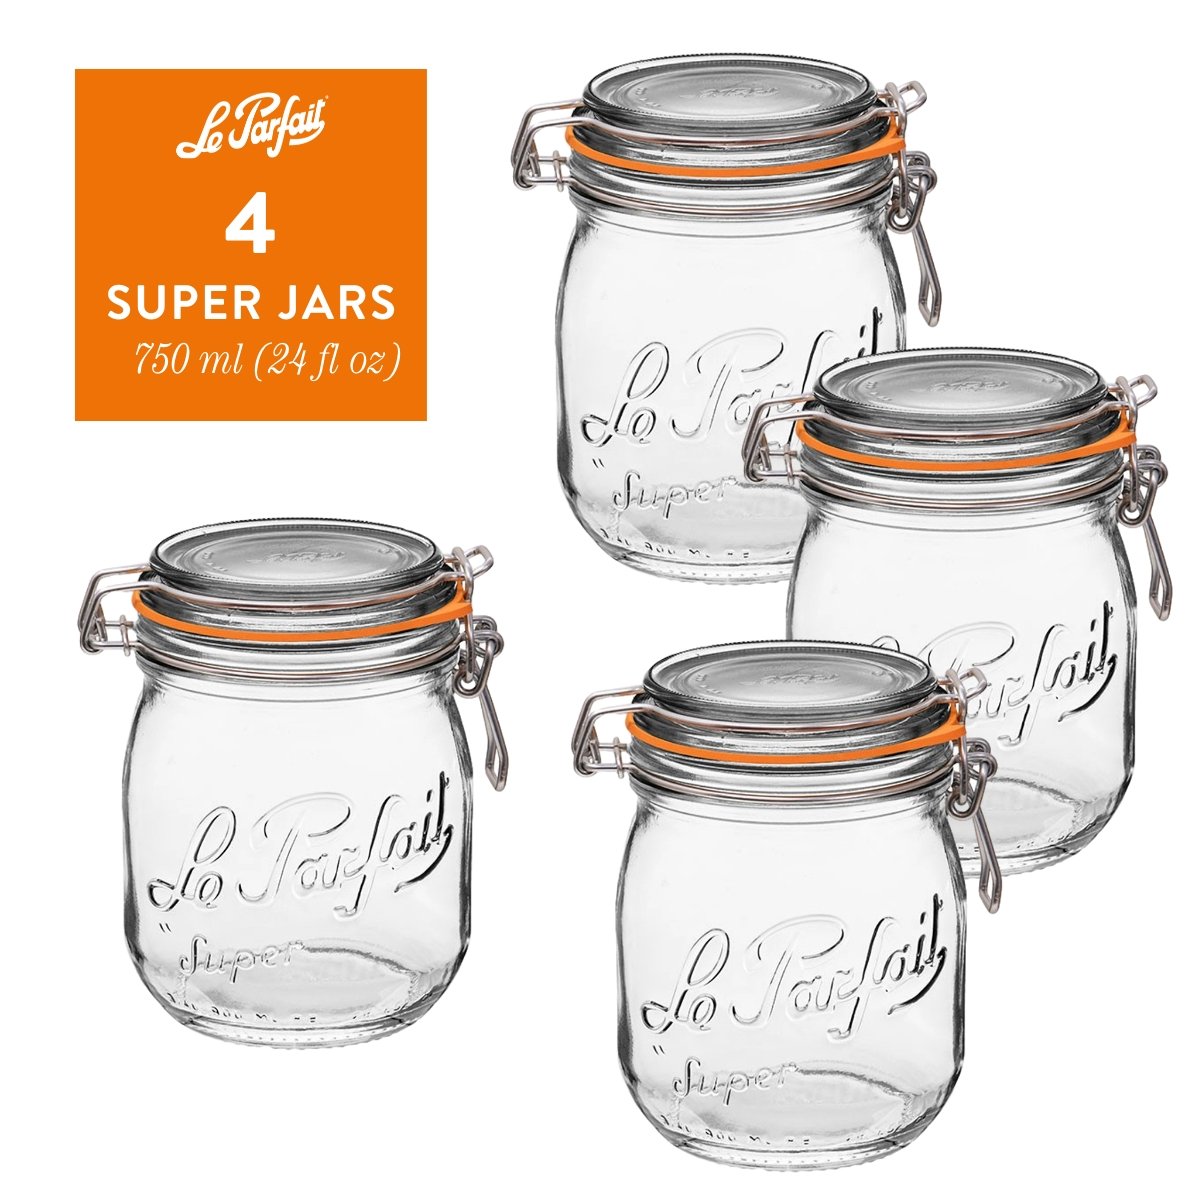 3 Le Parfait Jars (Jars only) – 1-800-GRANOLA®